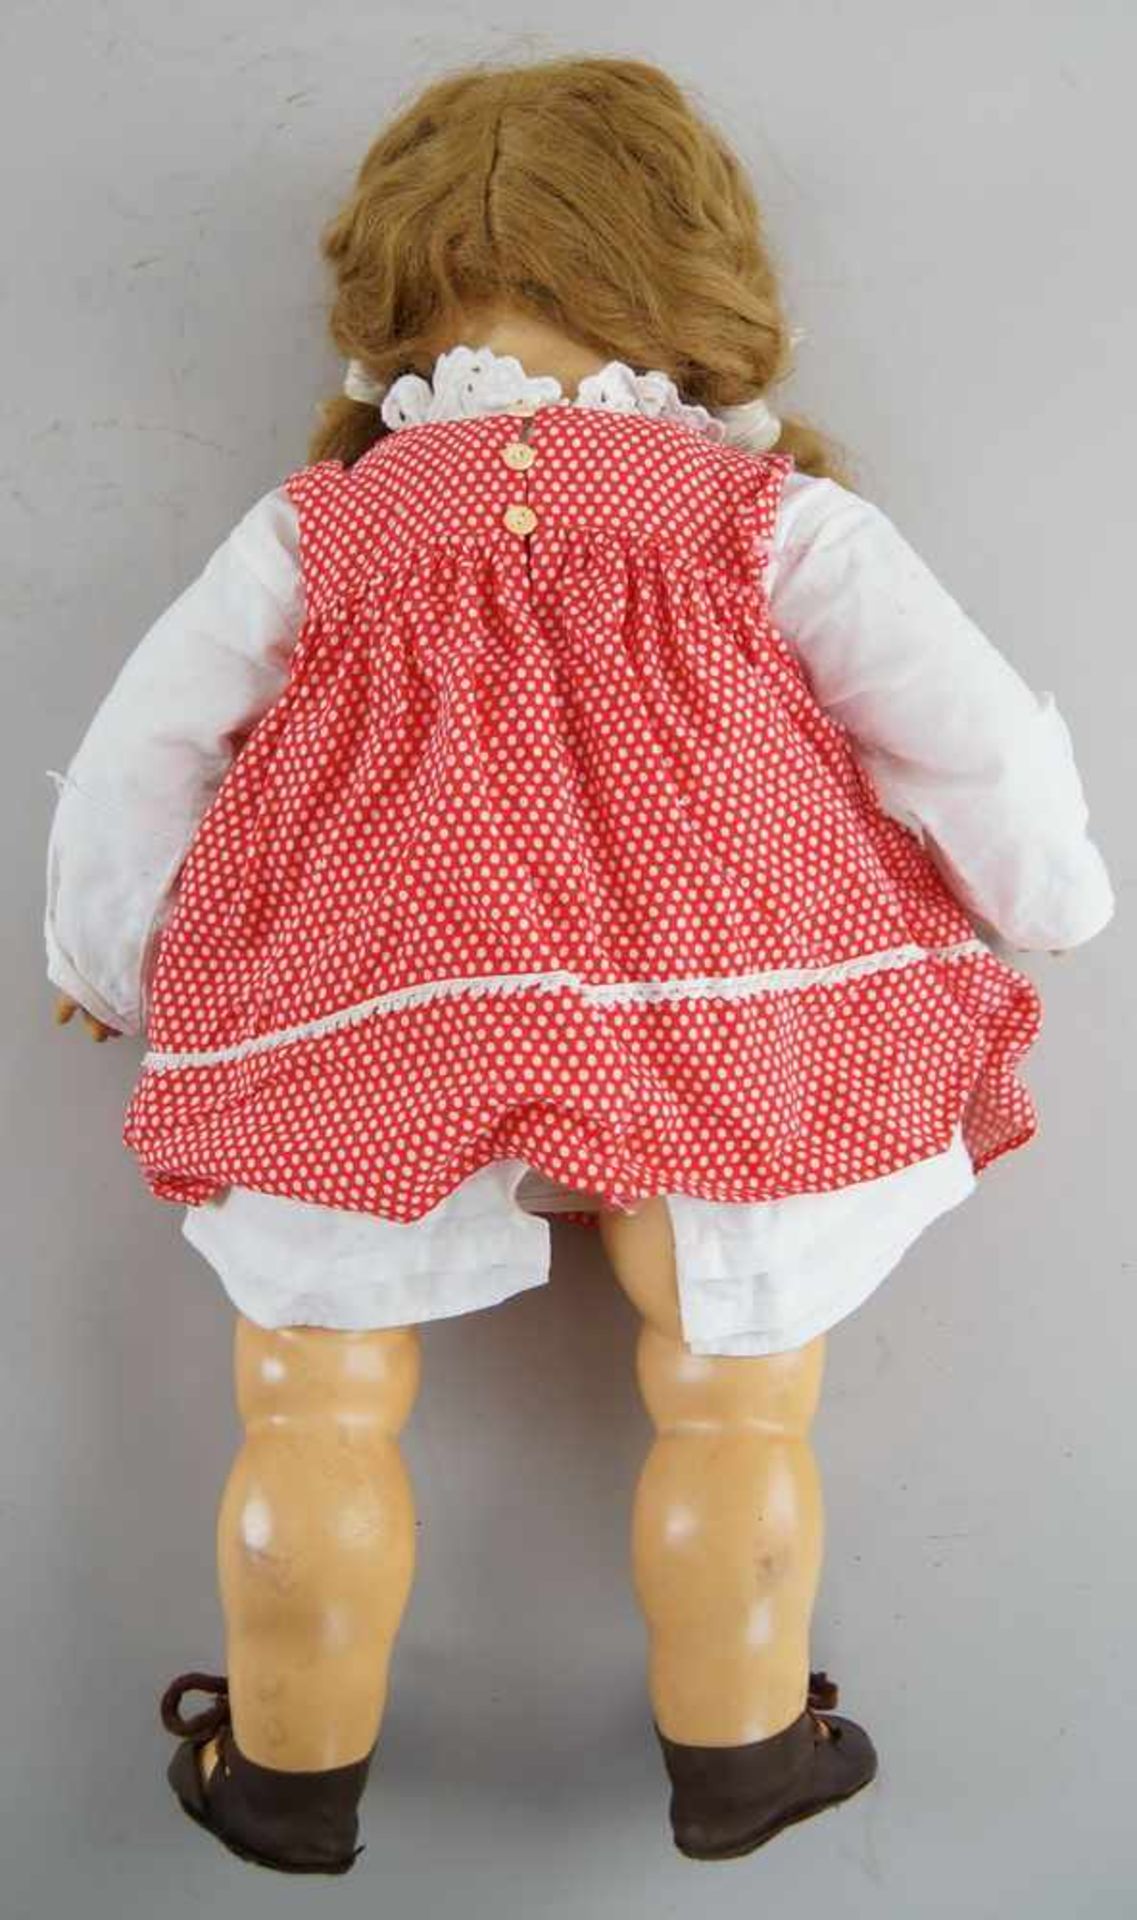 Puppe, wohl K&R, Massekopf, rot gepunktetes Kleid, um 1930, bespielt, 54 cm- - -24.00 % buyer's - Bild 4 aus 5